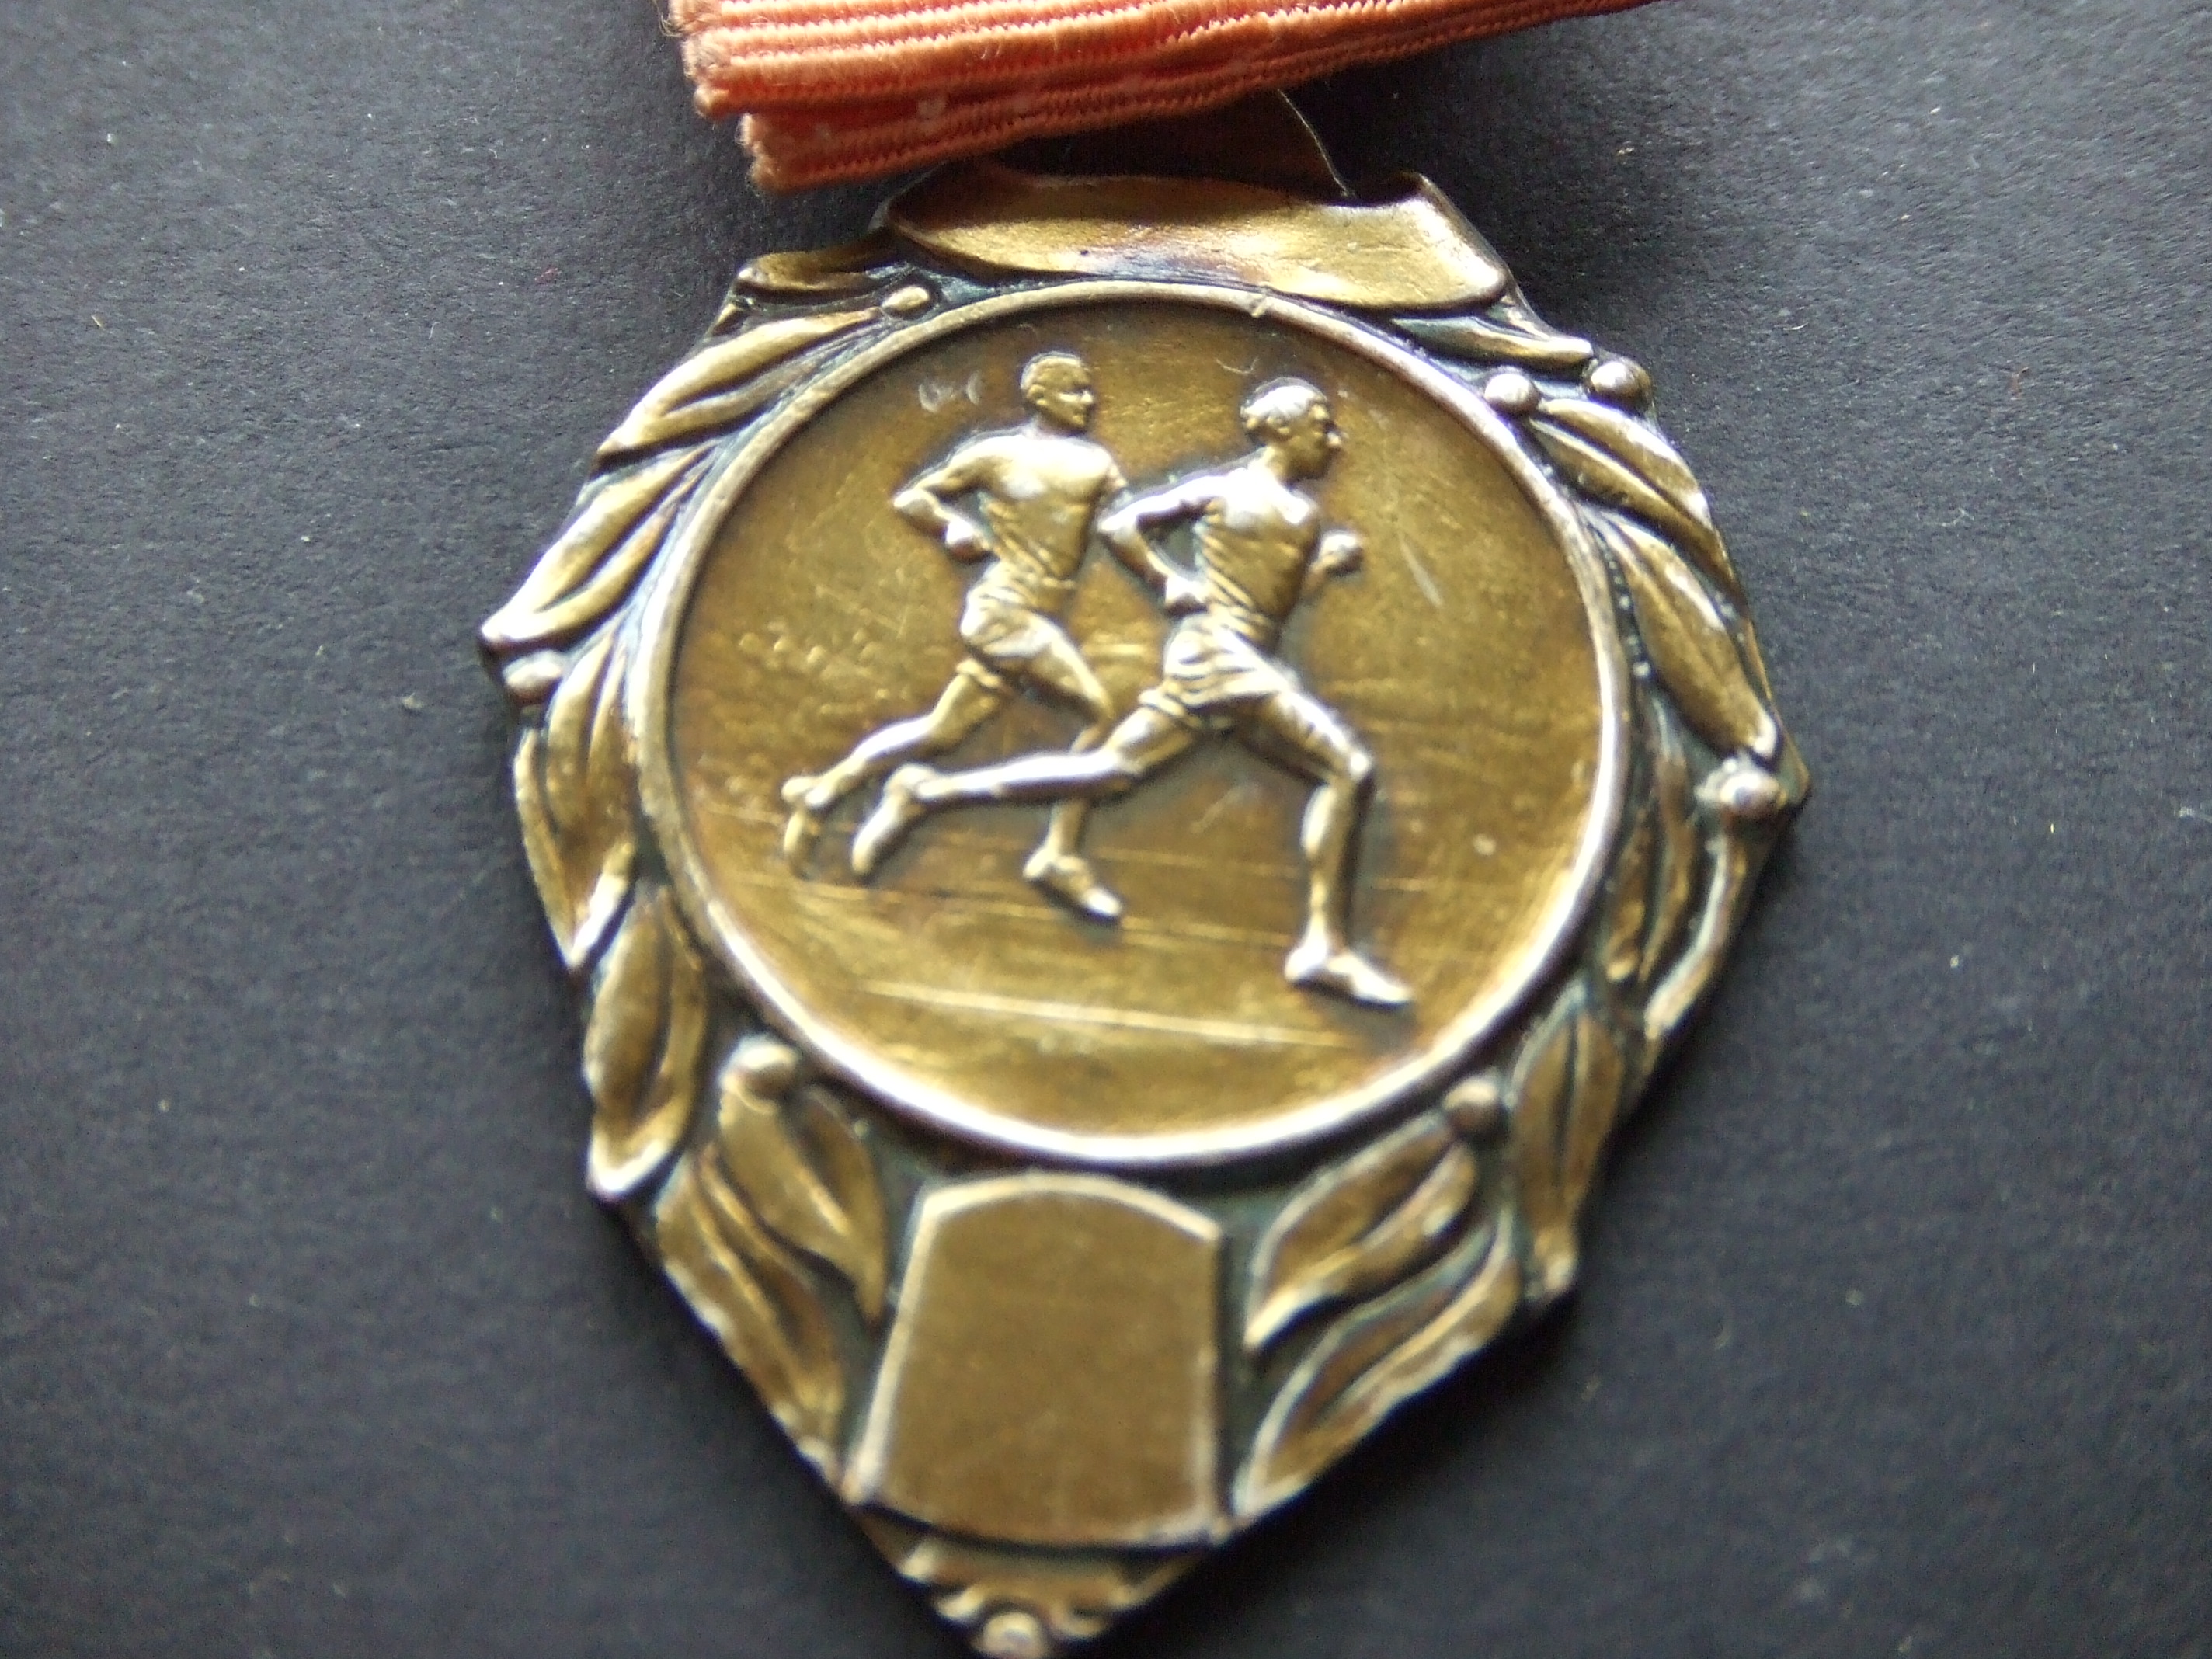 Atletiekvereniging Castricum prestatieloop 1973 goudkleurig